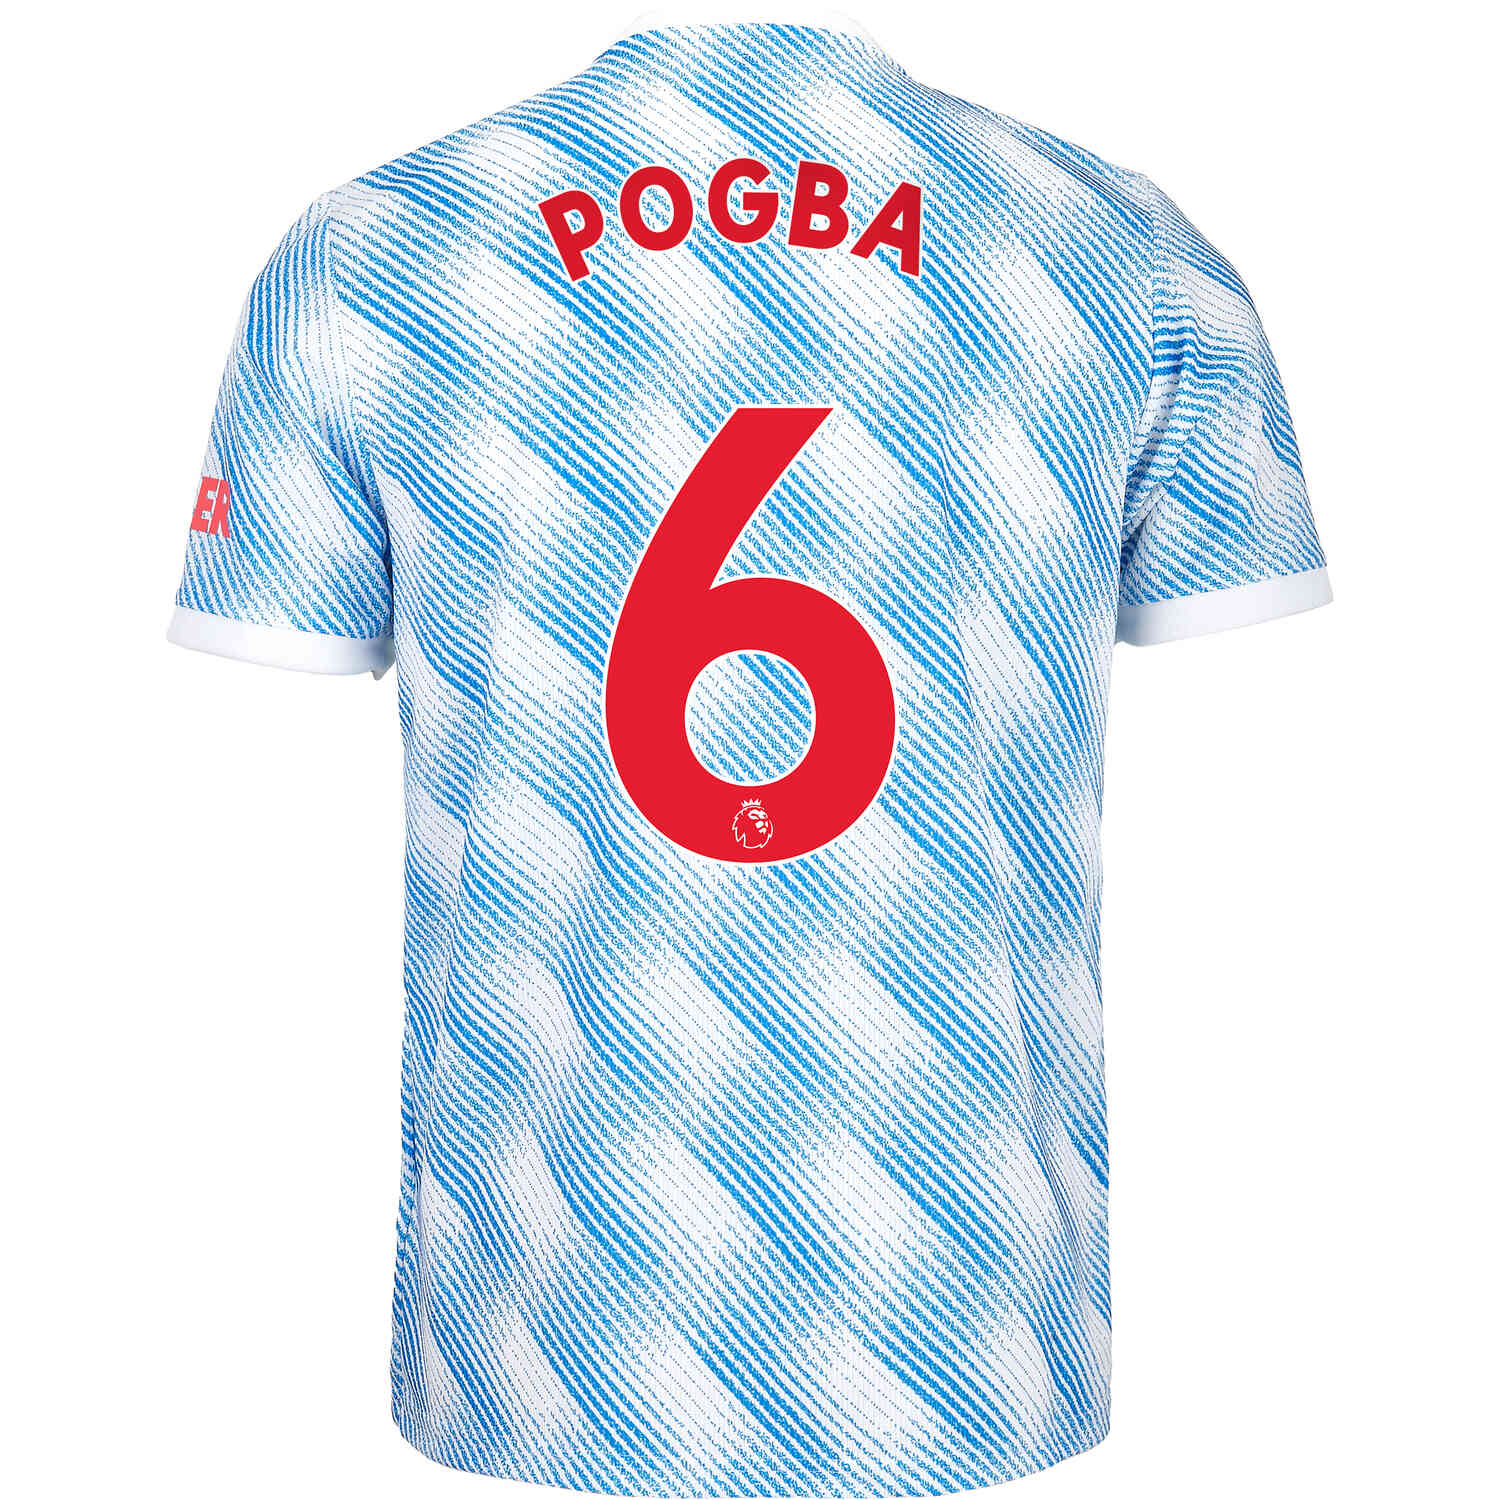 2021/22 adidas Paul Pogba Manchester United Jersey - SoccerPro